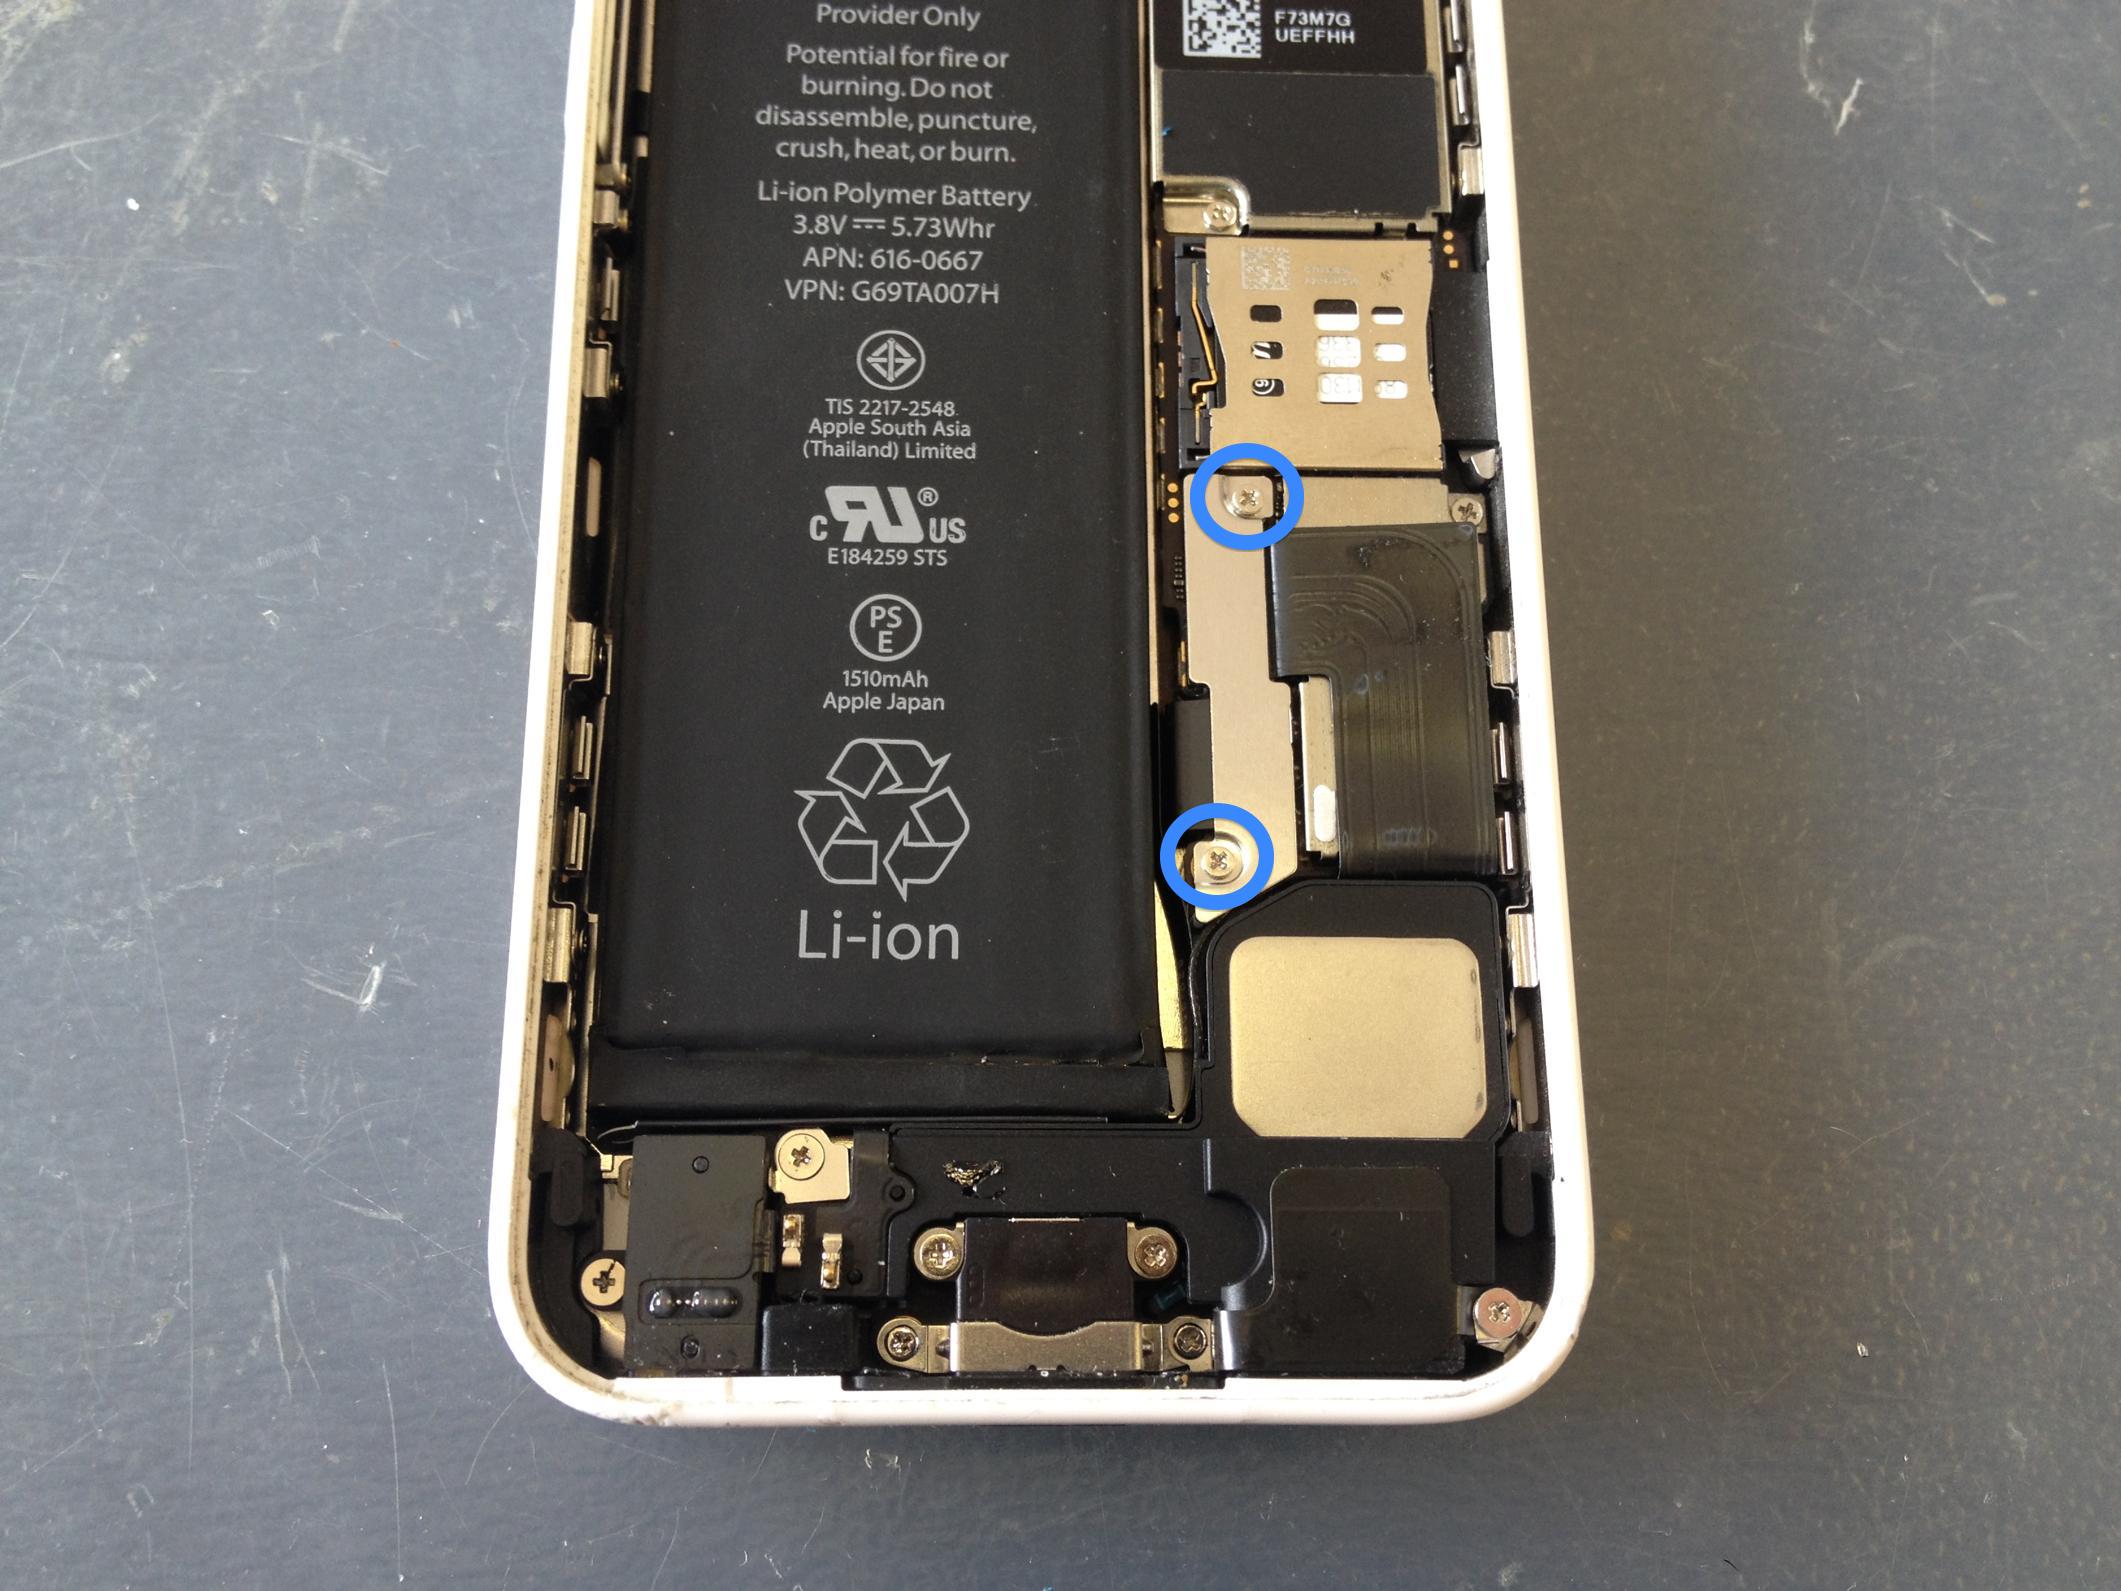 iPhone5Cバッテリー交換方法 | iPhone修理方法